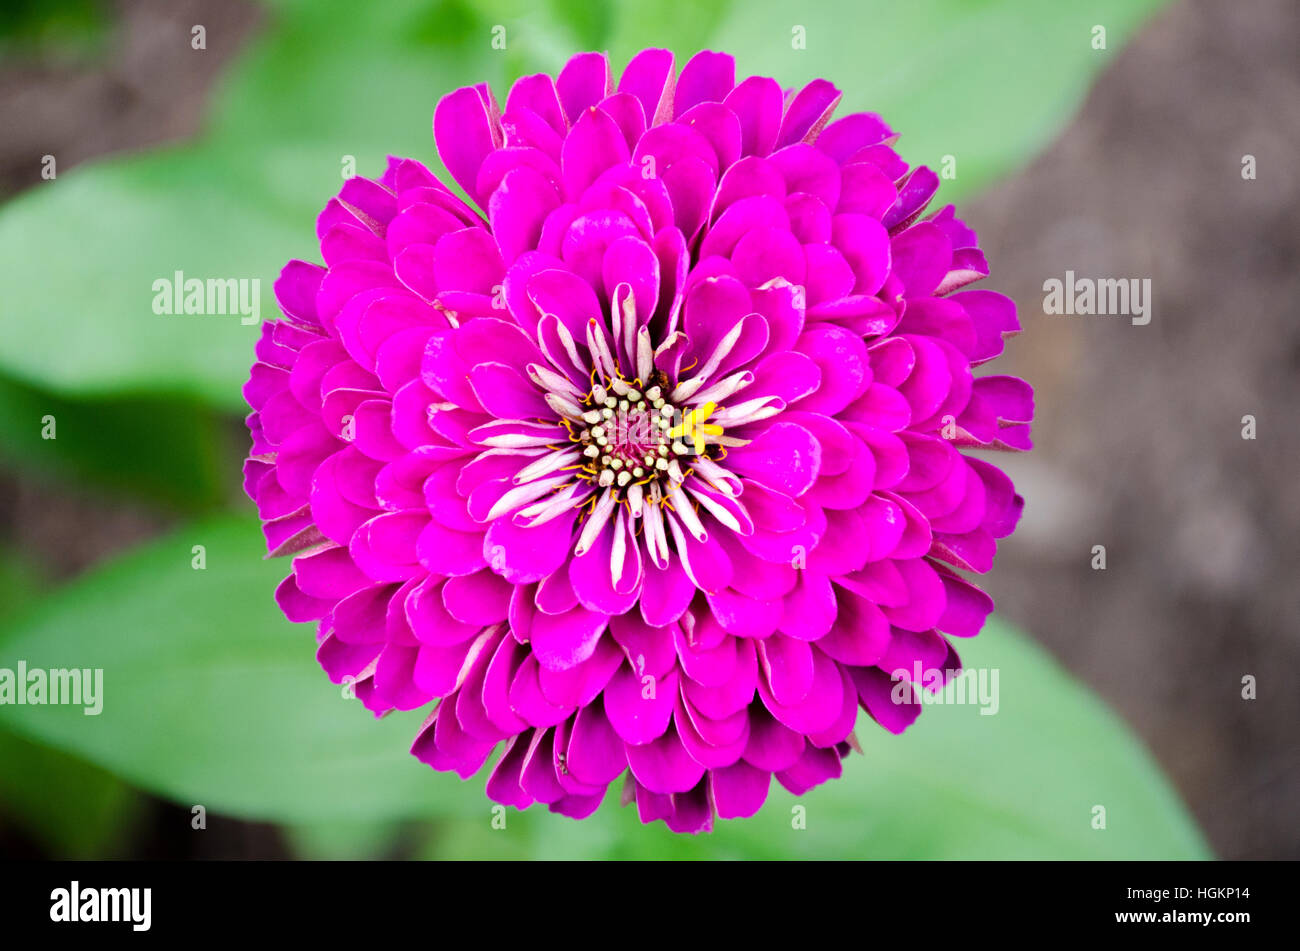 chrysanthemum, cut flower, garden flower, magenta mum, fuchsia mum Stock Photo